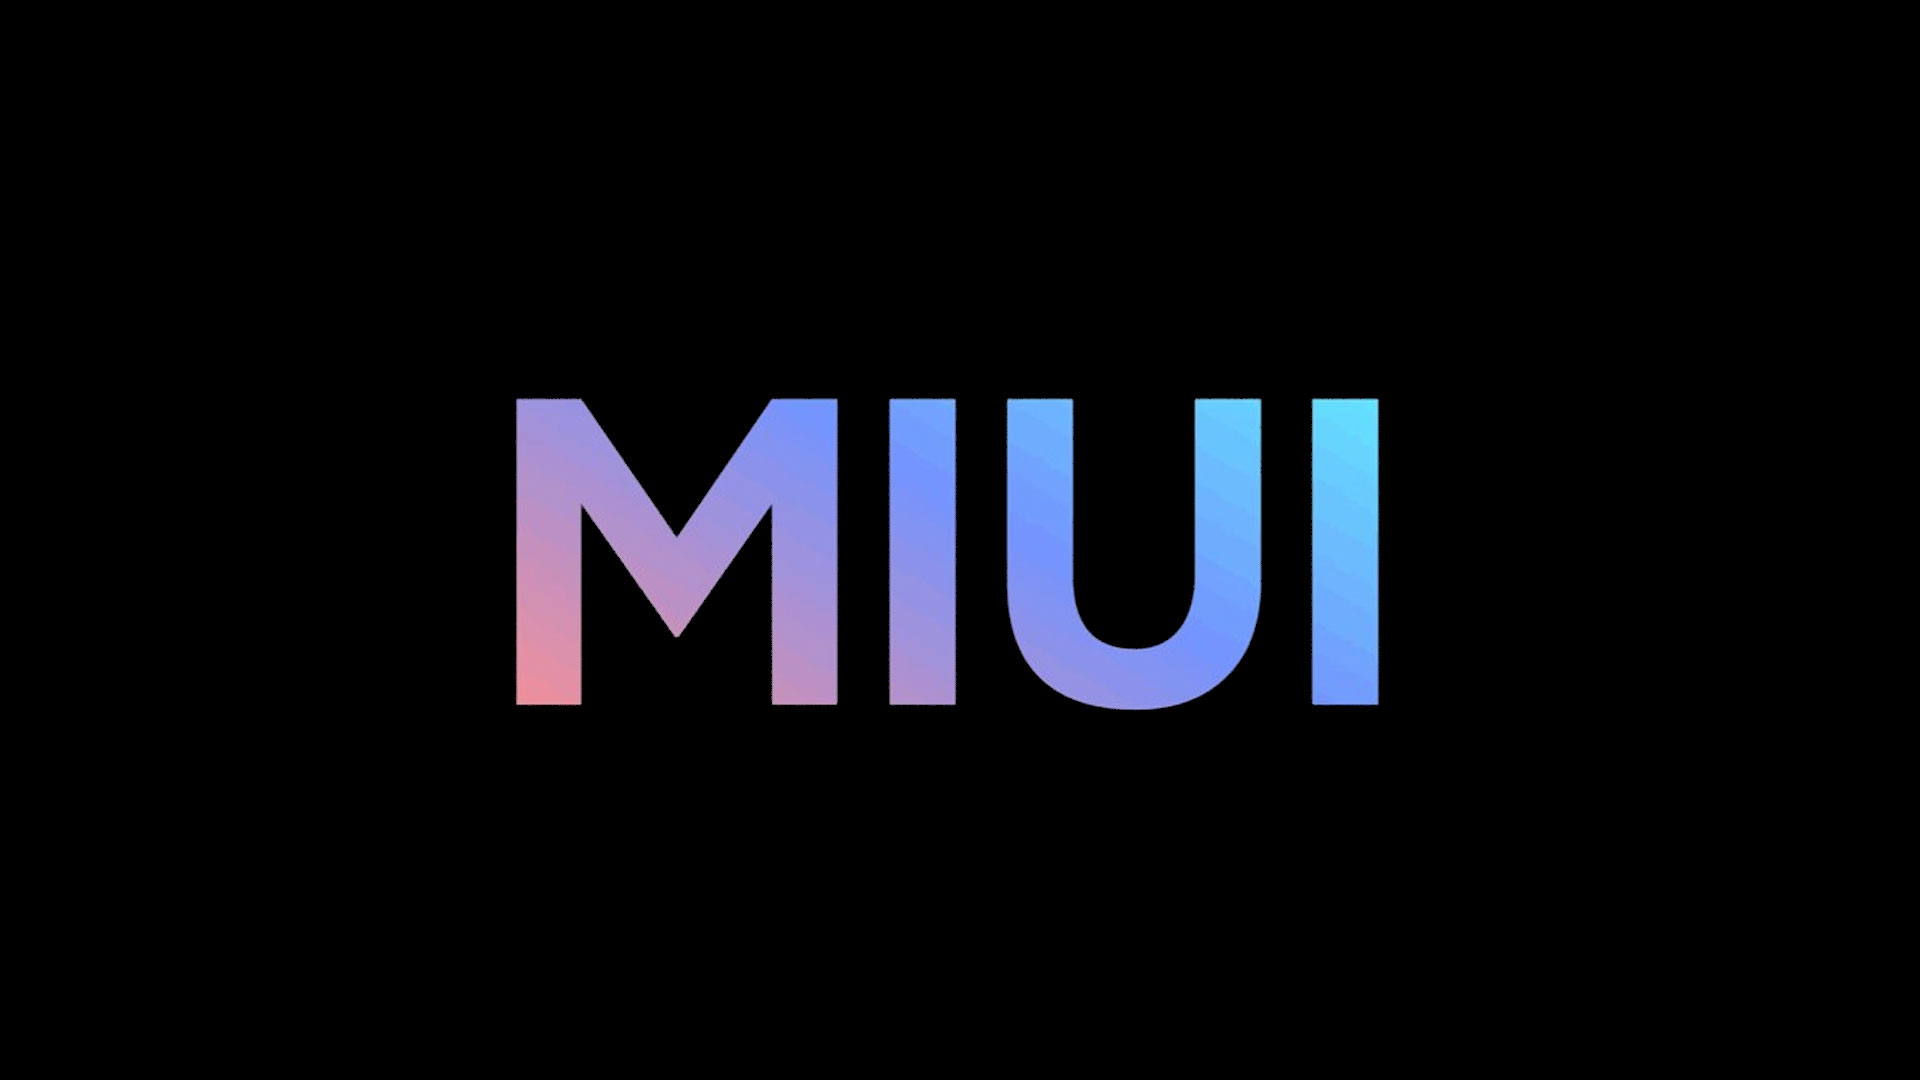 MIUI hat die Marke von 600 Millionen monatlichen Nutzern überschritten - ein Zuwachs von 100 Millionen in eineinhalb Jahren